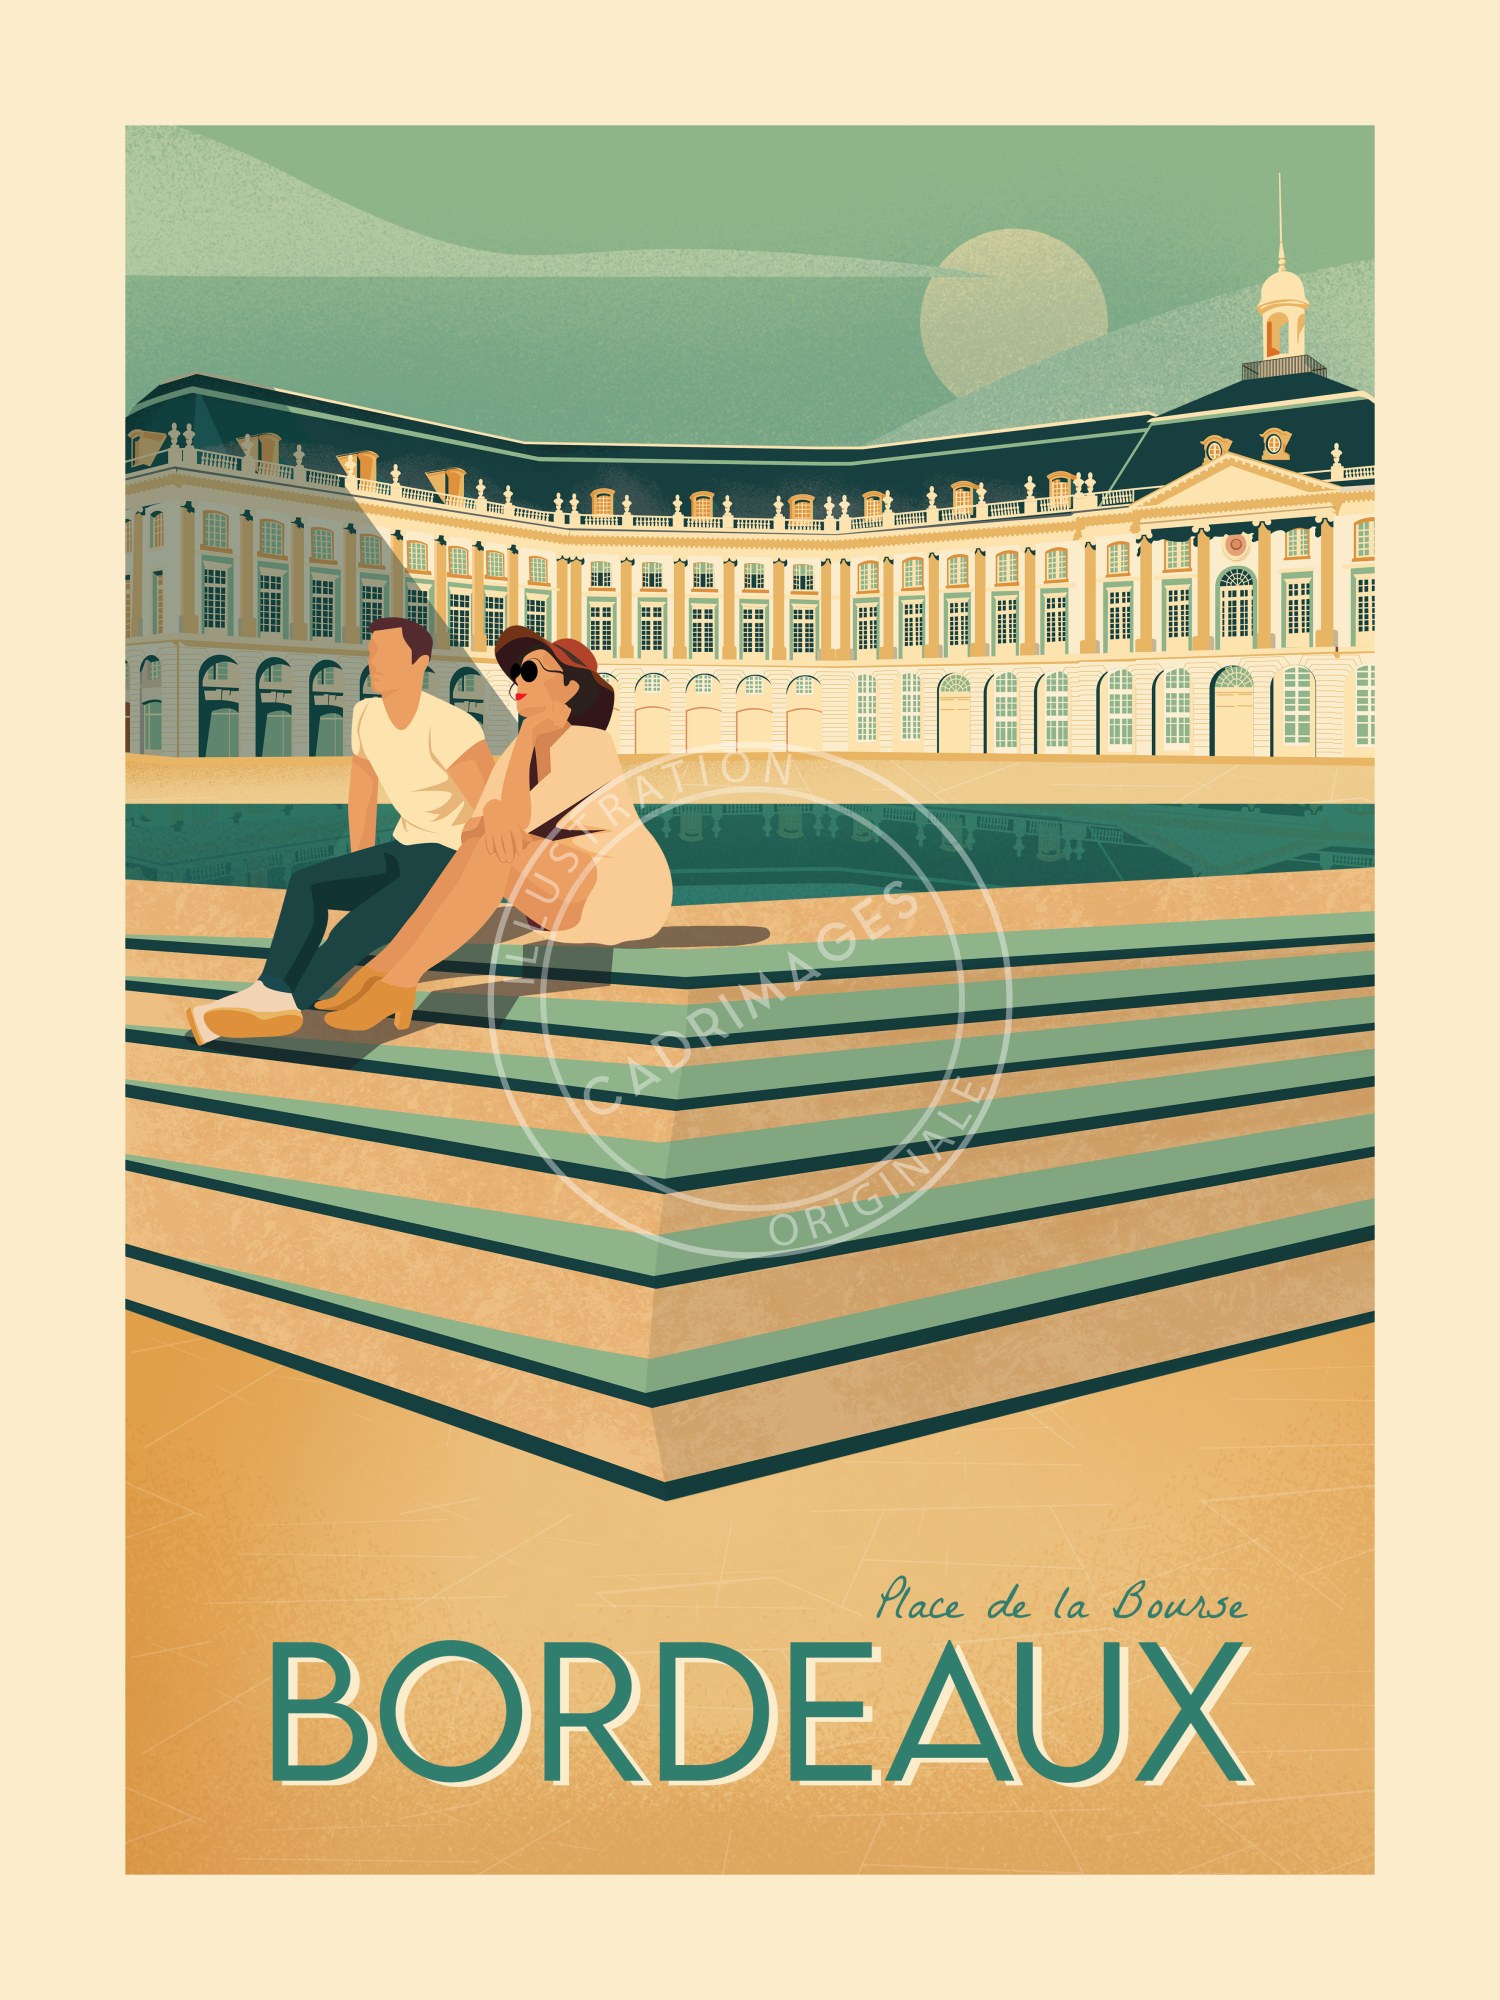 Affiche de Bordeaux, le Miroir d'eau